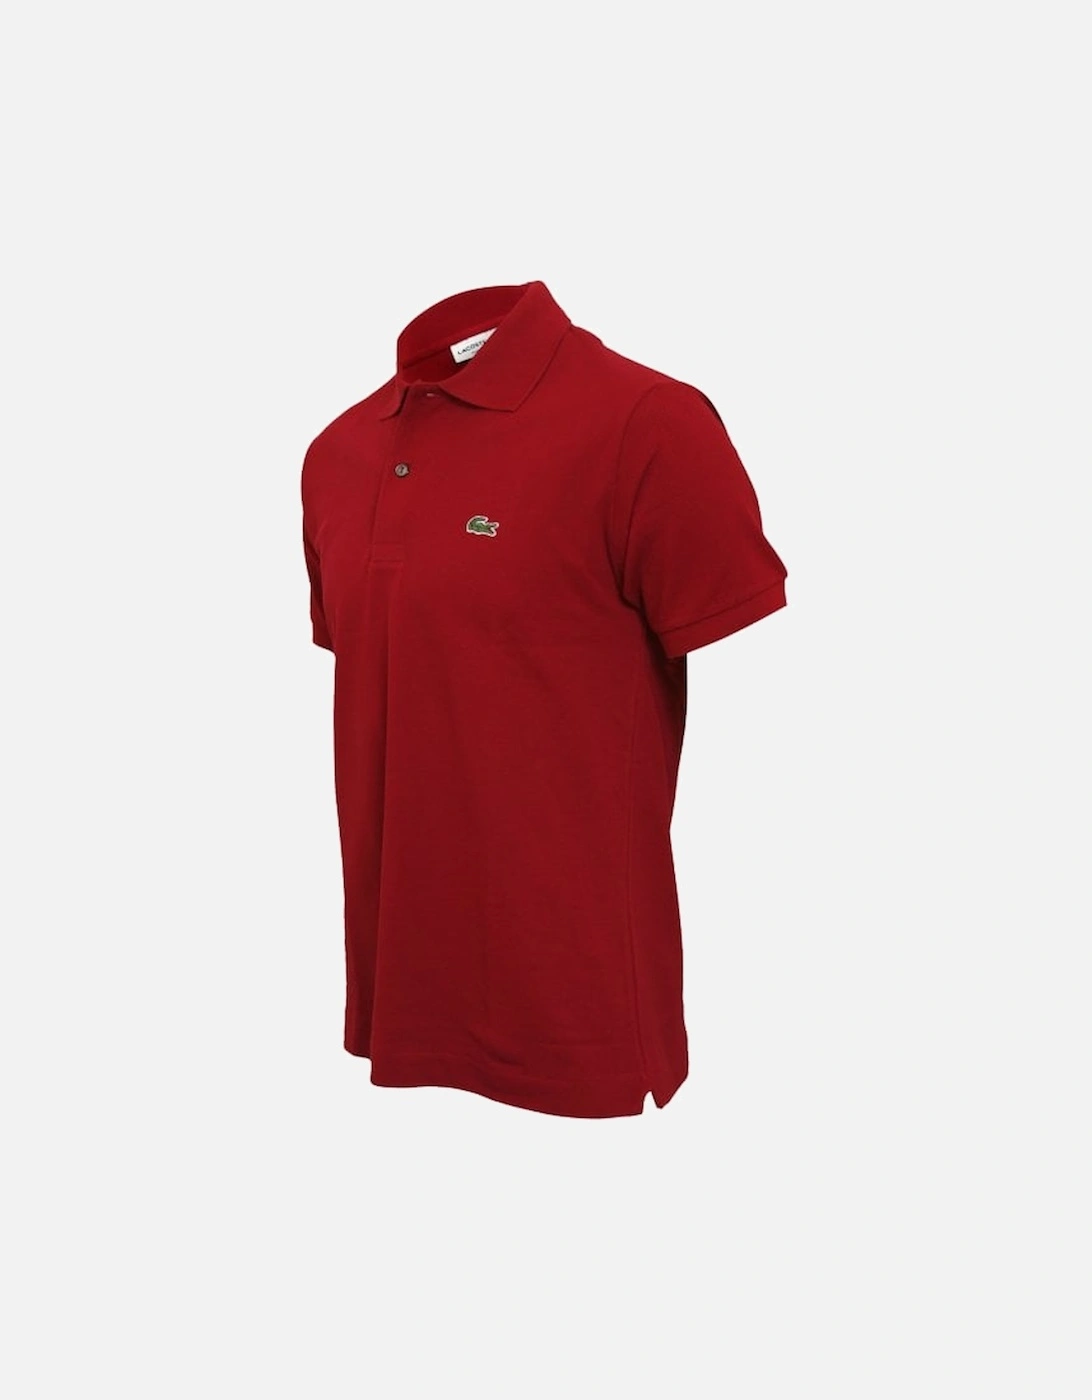 Classic Fit Pique Polo Shirt, Bordeaux Red